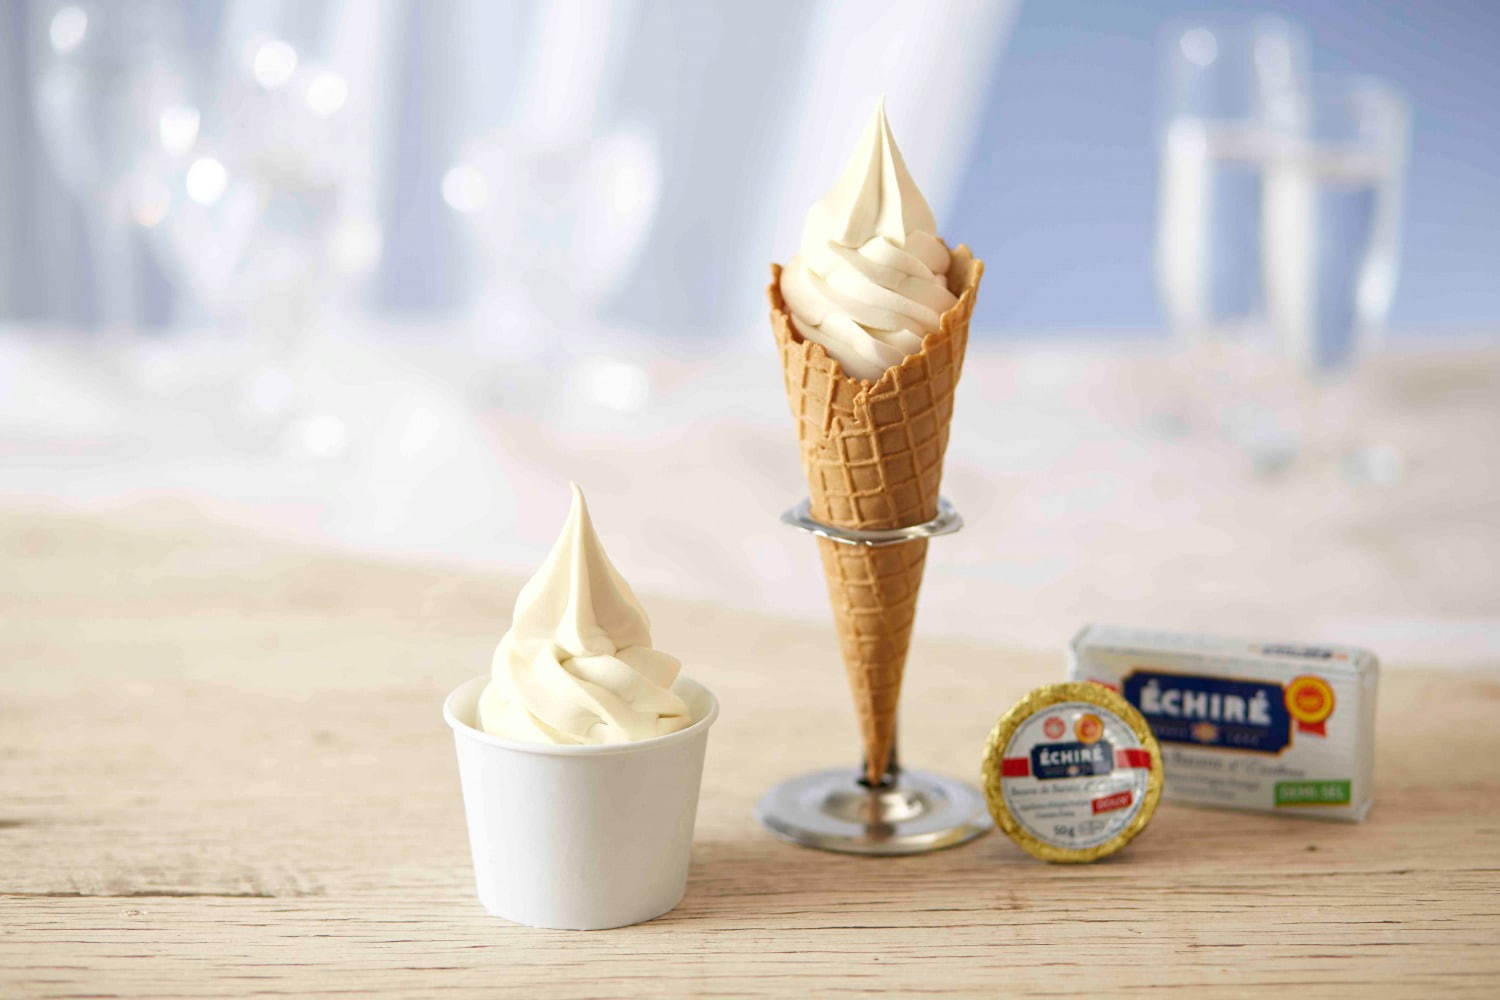 「エシレ・ソフトクリーム」うめだ阪急初登場、エシレ バターを贅沢に練り込んだ濃厚スイーツ | 写真